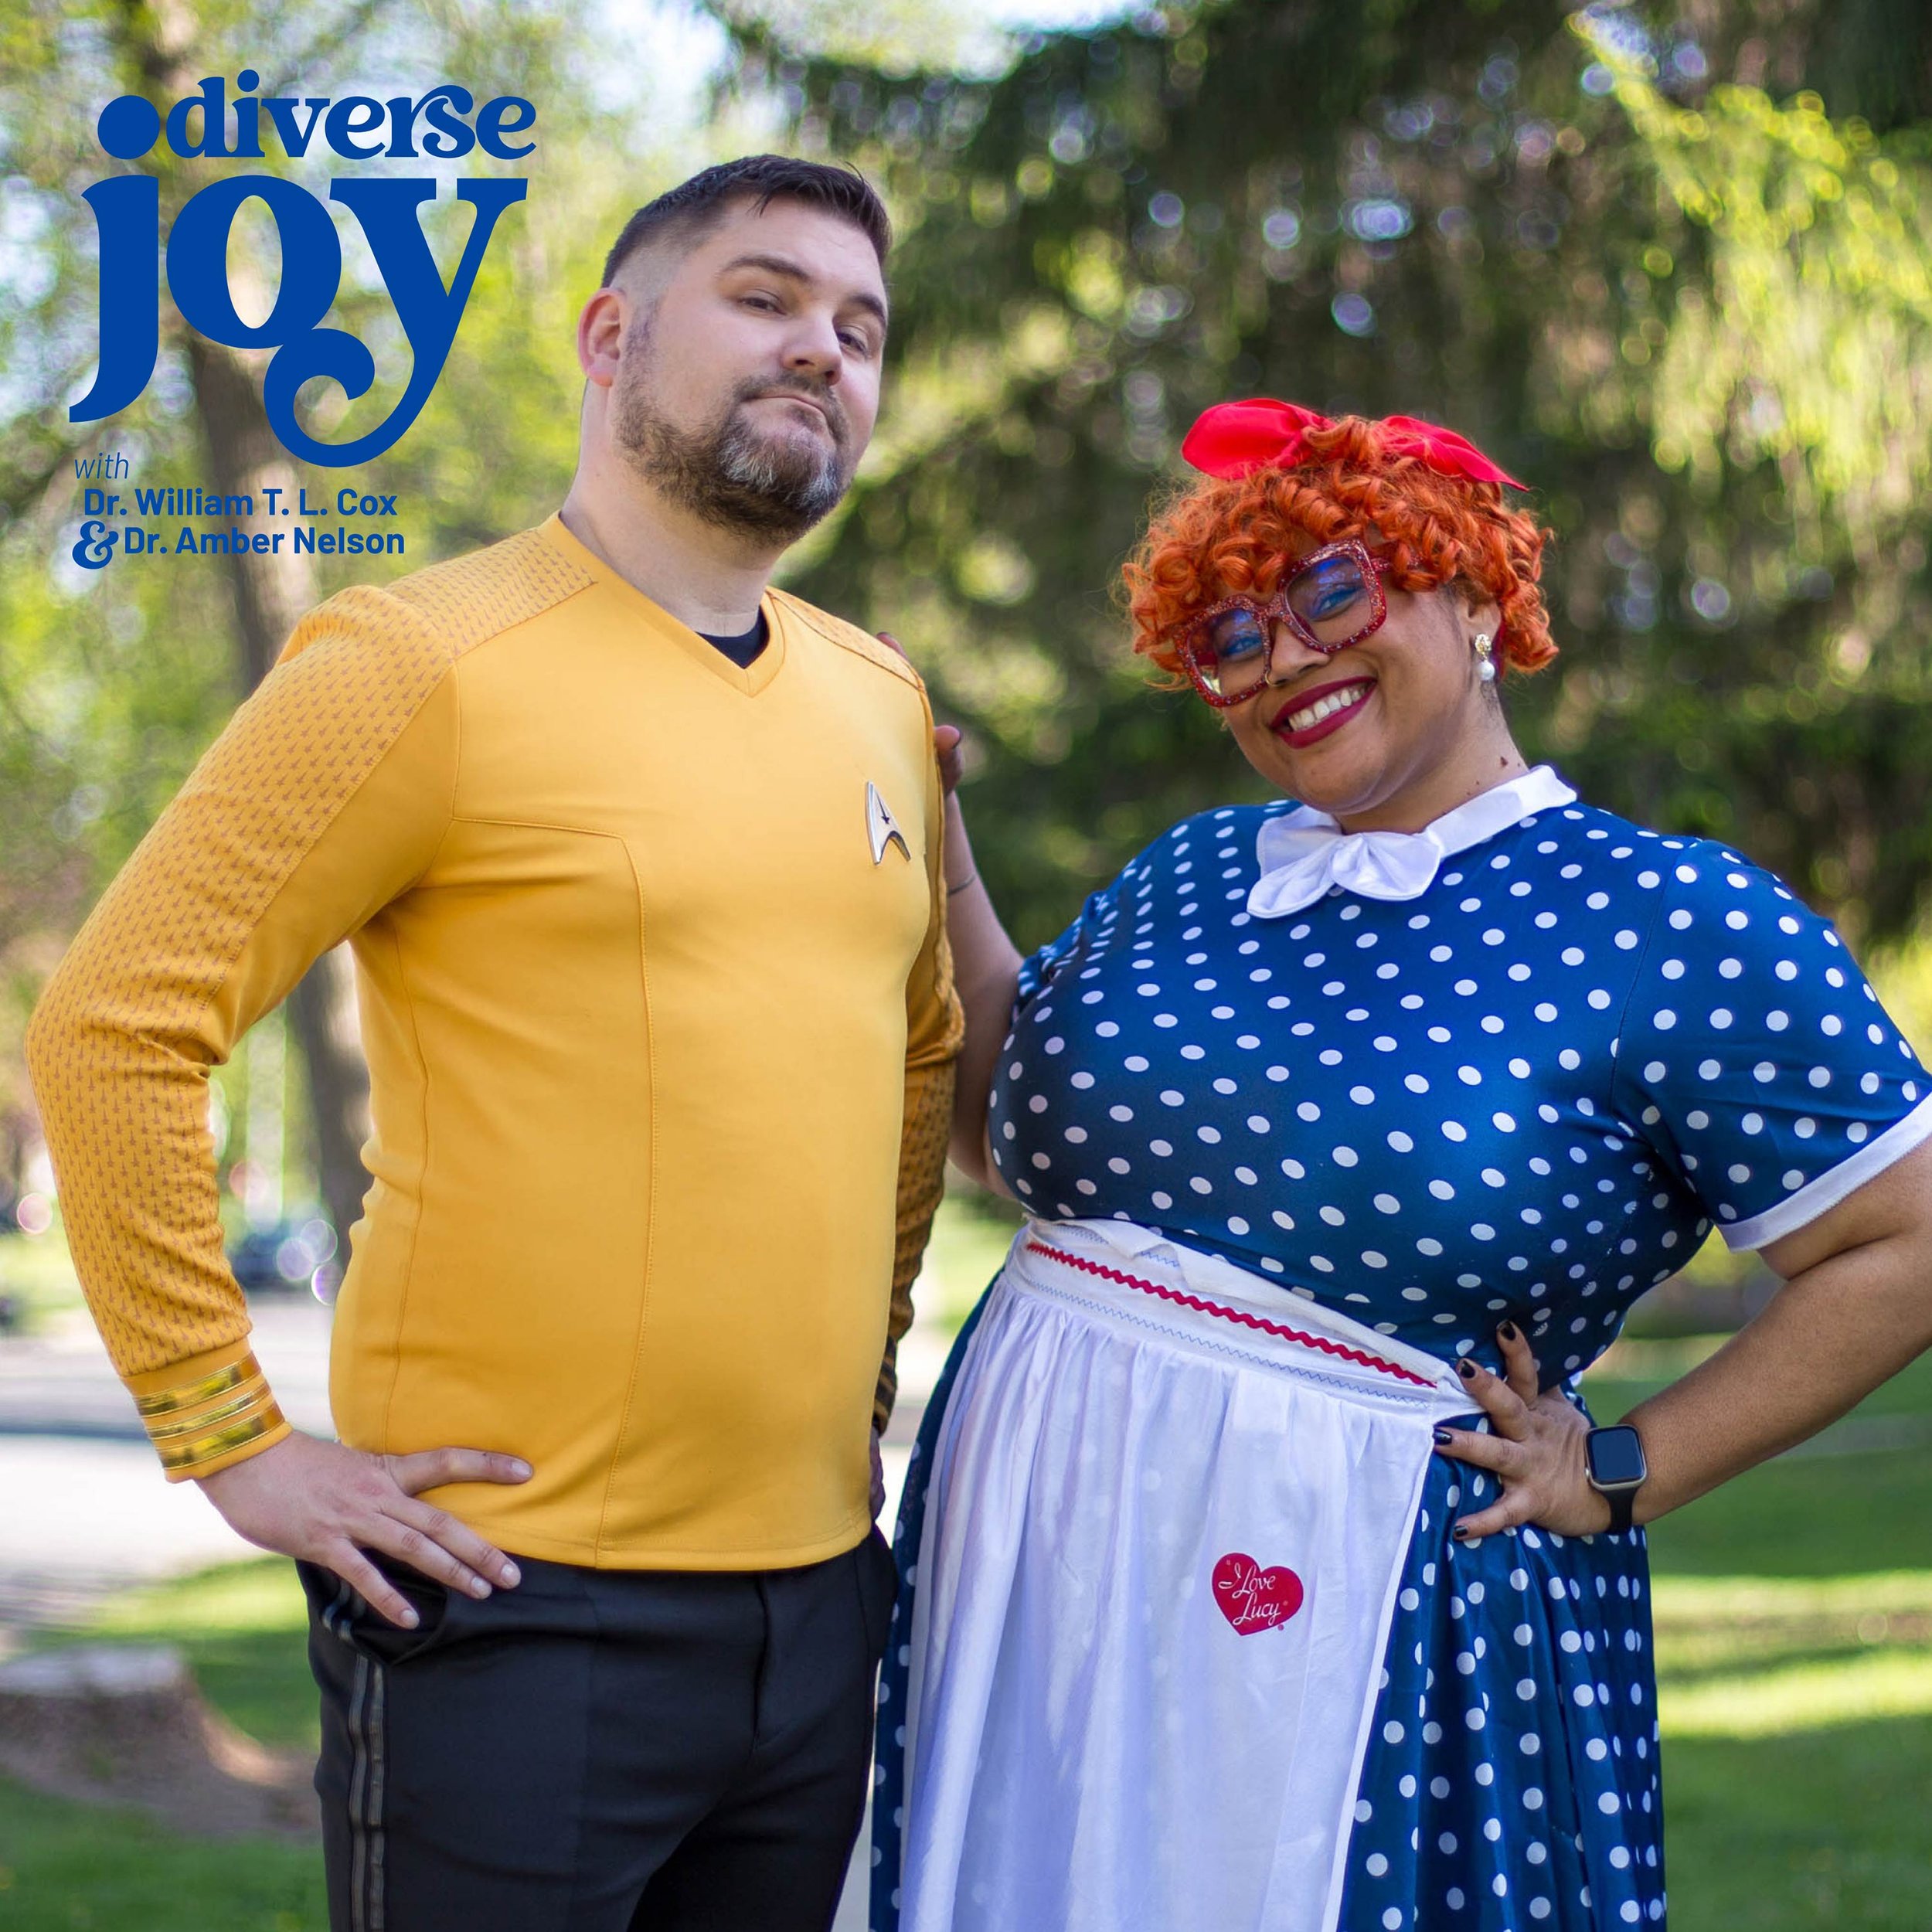 Diverse-Joy-S01E05-Covers_PodBean.jpg